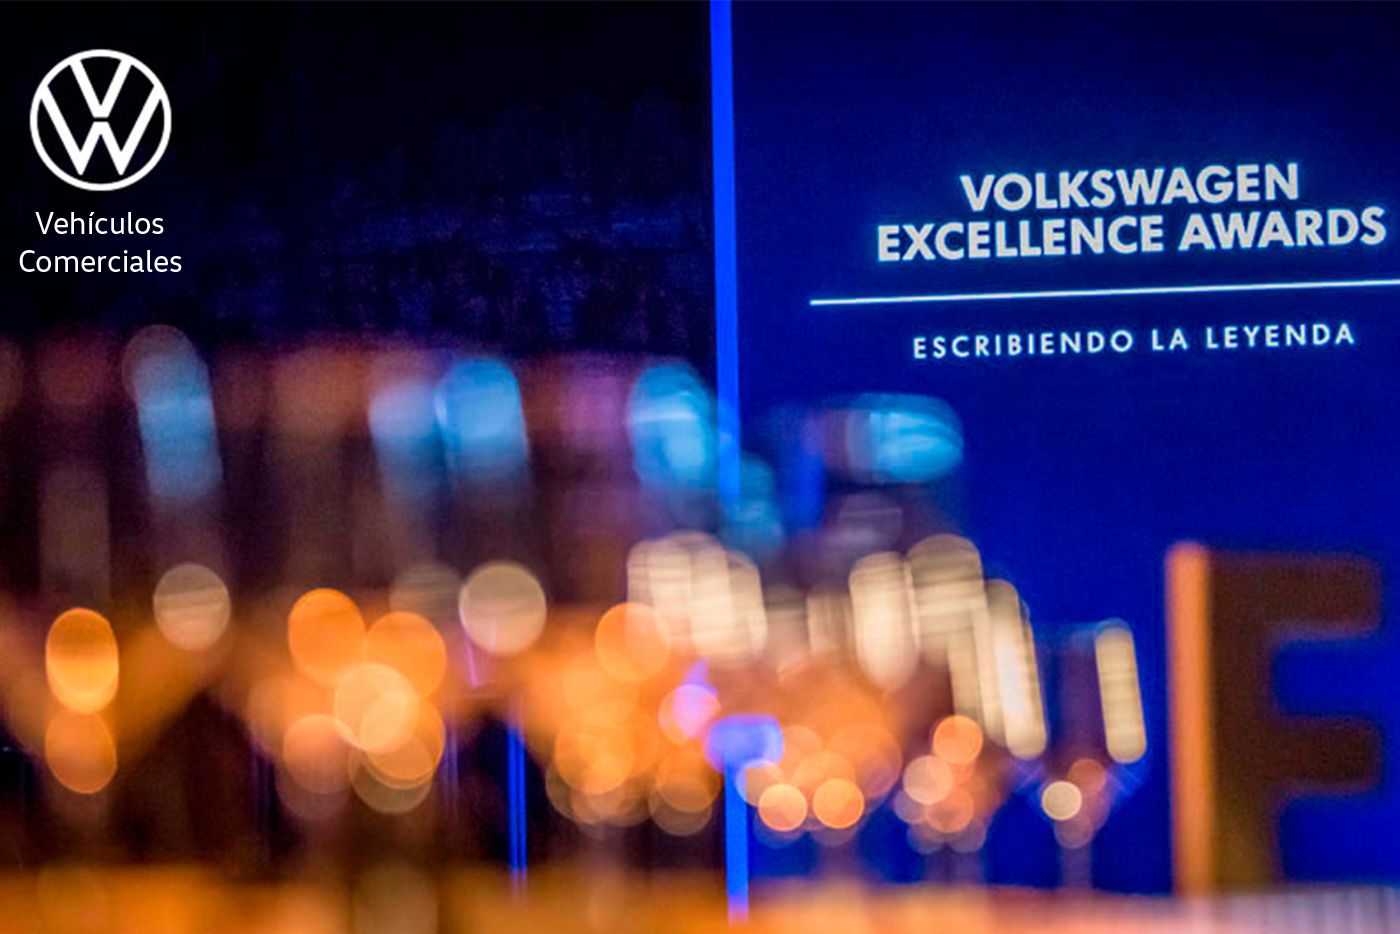 ¡Solera Motor Vehículos Comerciales Volkswagen ha sido galardonado como Volkswagen Excellence Awards 2019!